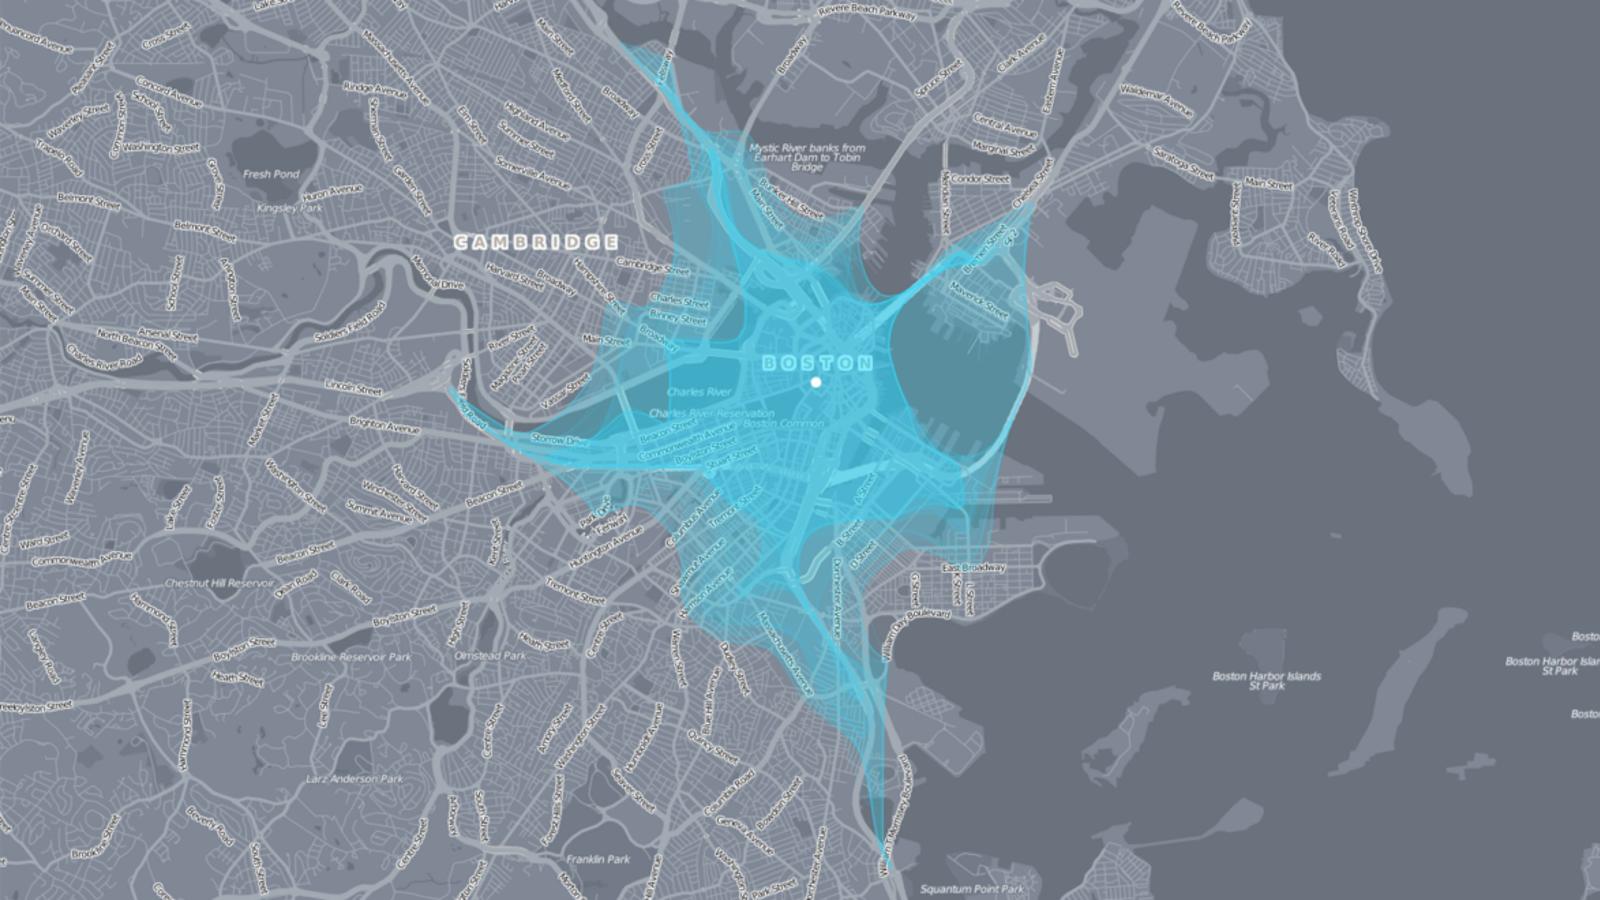  Farbig hervorgehobene interaktive Darstellung von Bewegungsr?umen in Boston